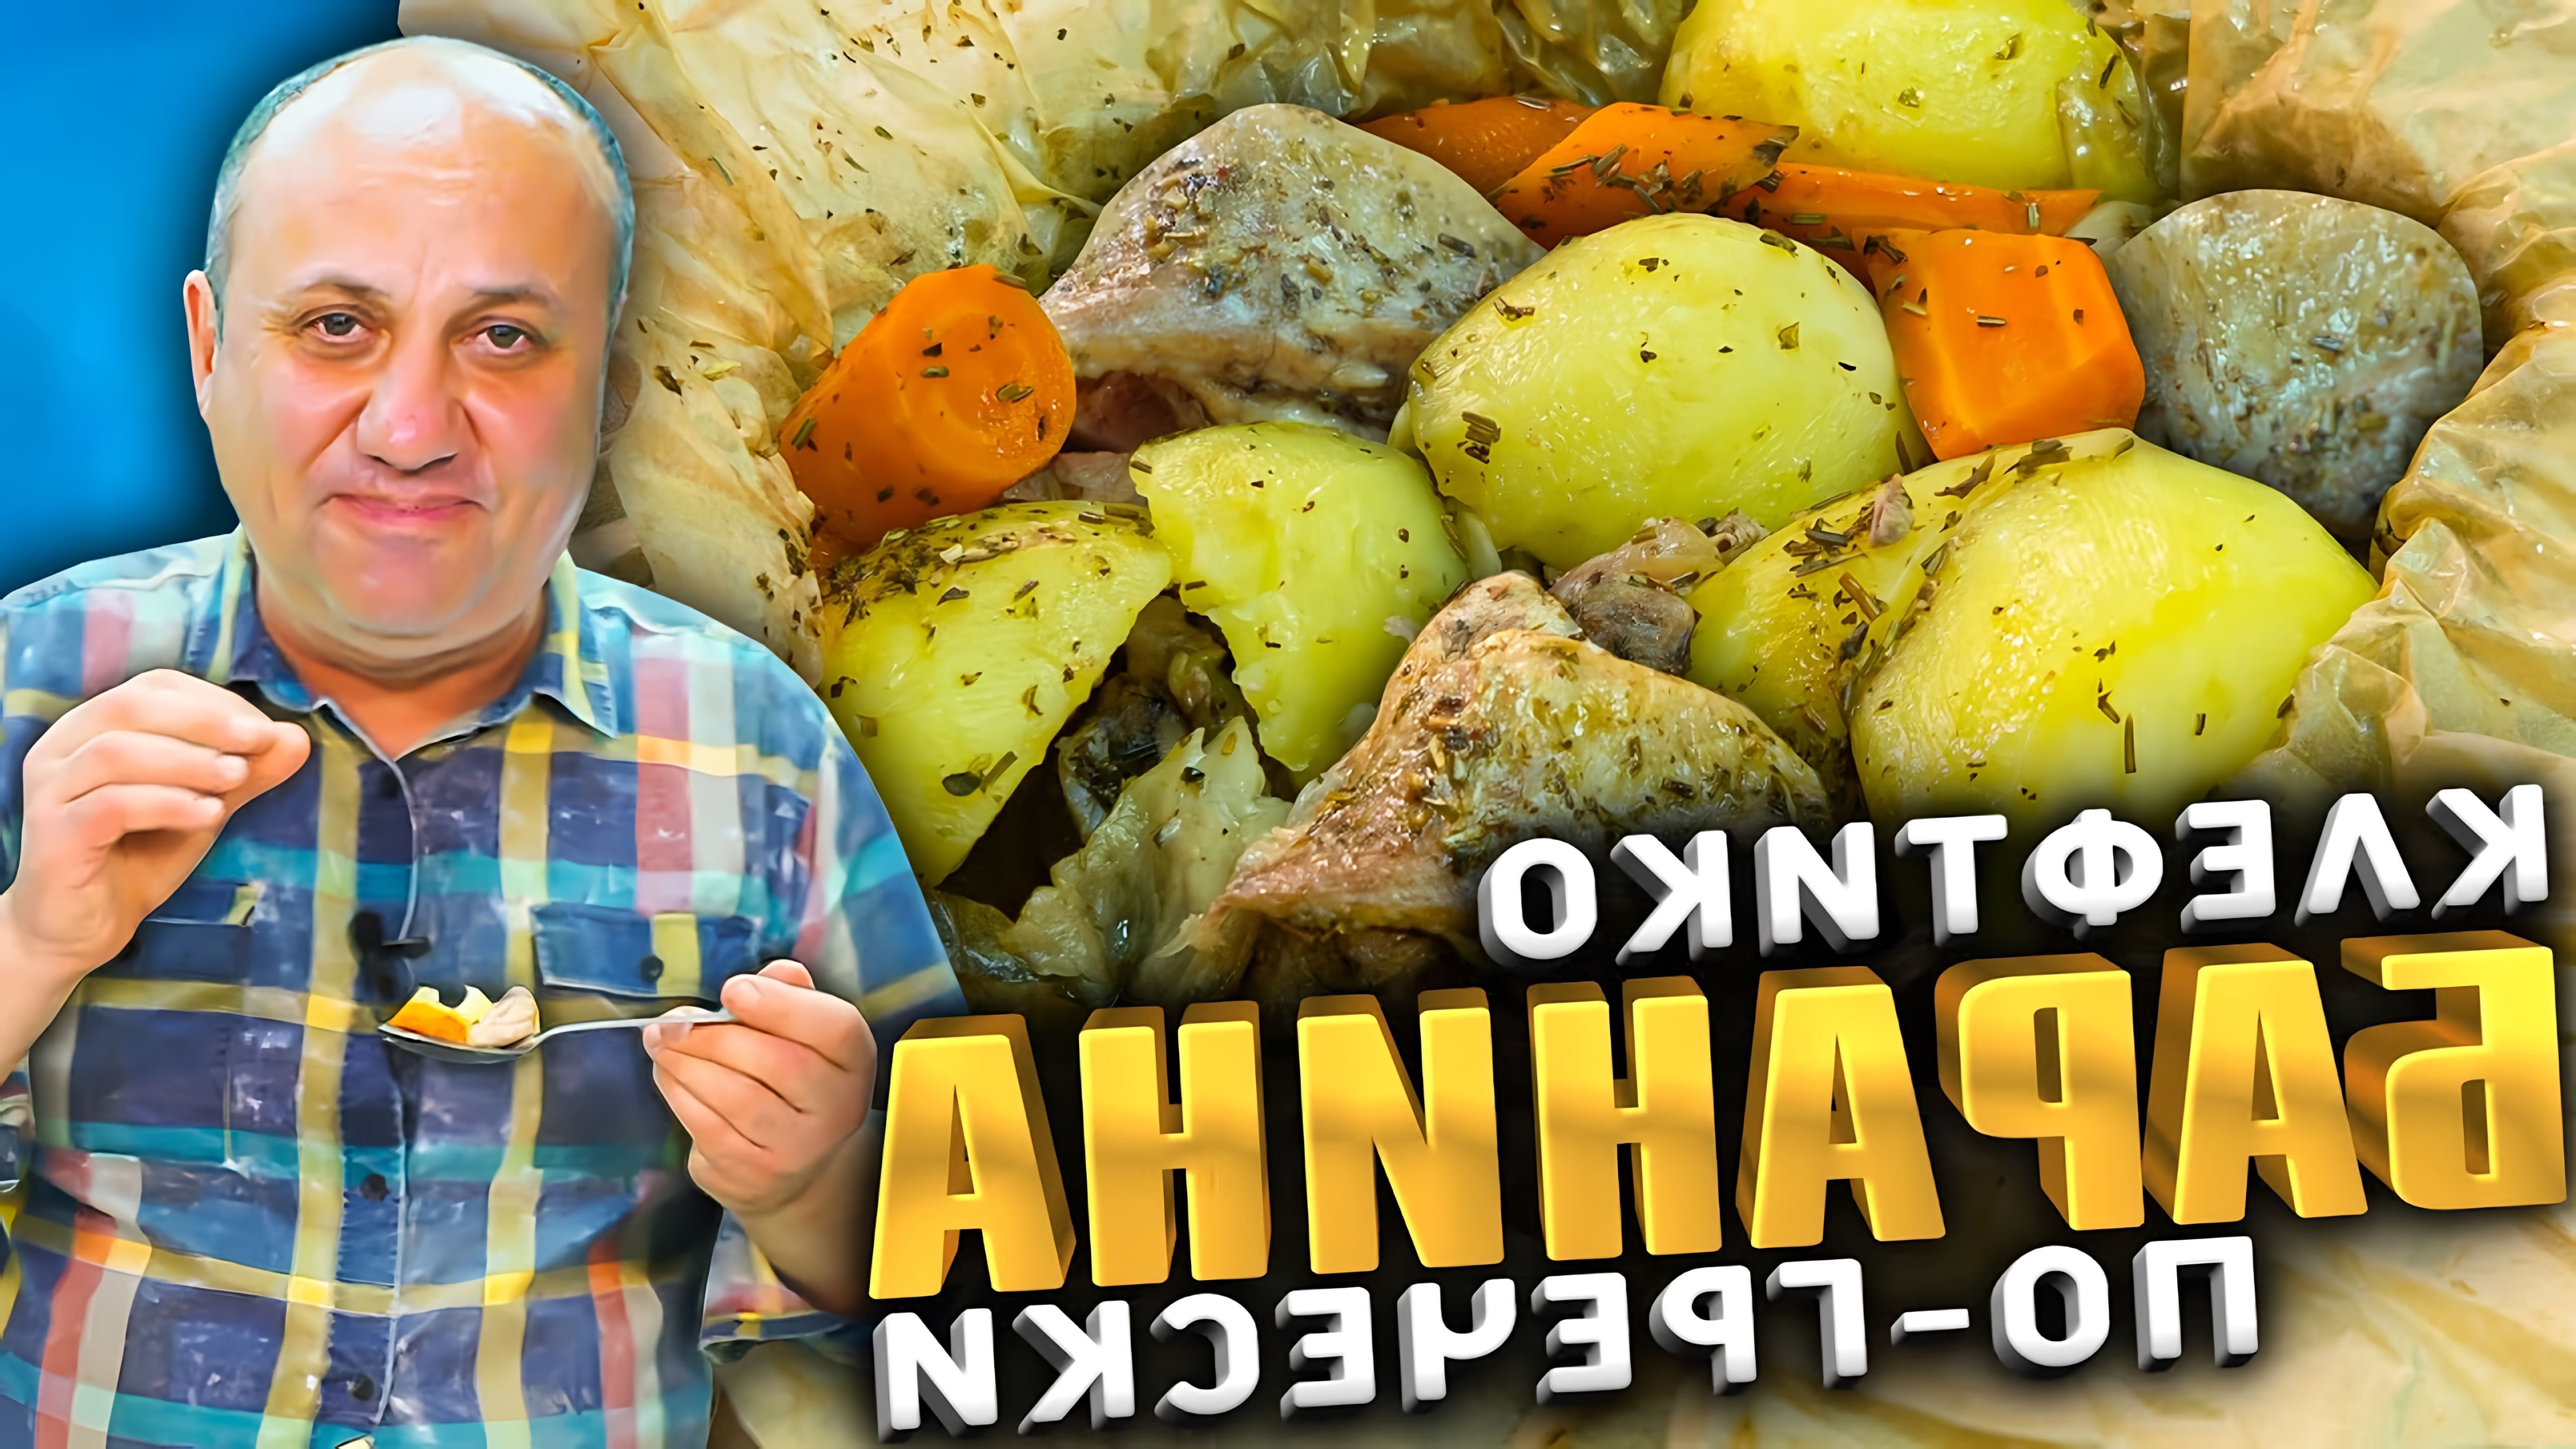 В этом видео шеф-повар показывает, как приготовить знаменитое греческое блюдо - томленую баранью лопатку, или "клефтеки"